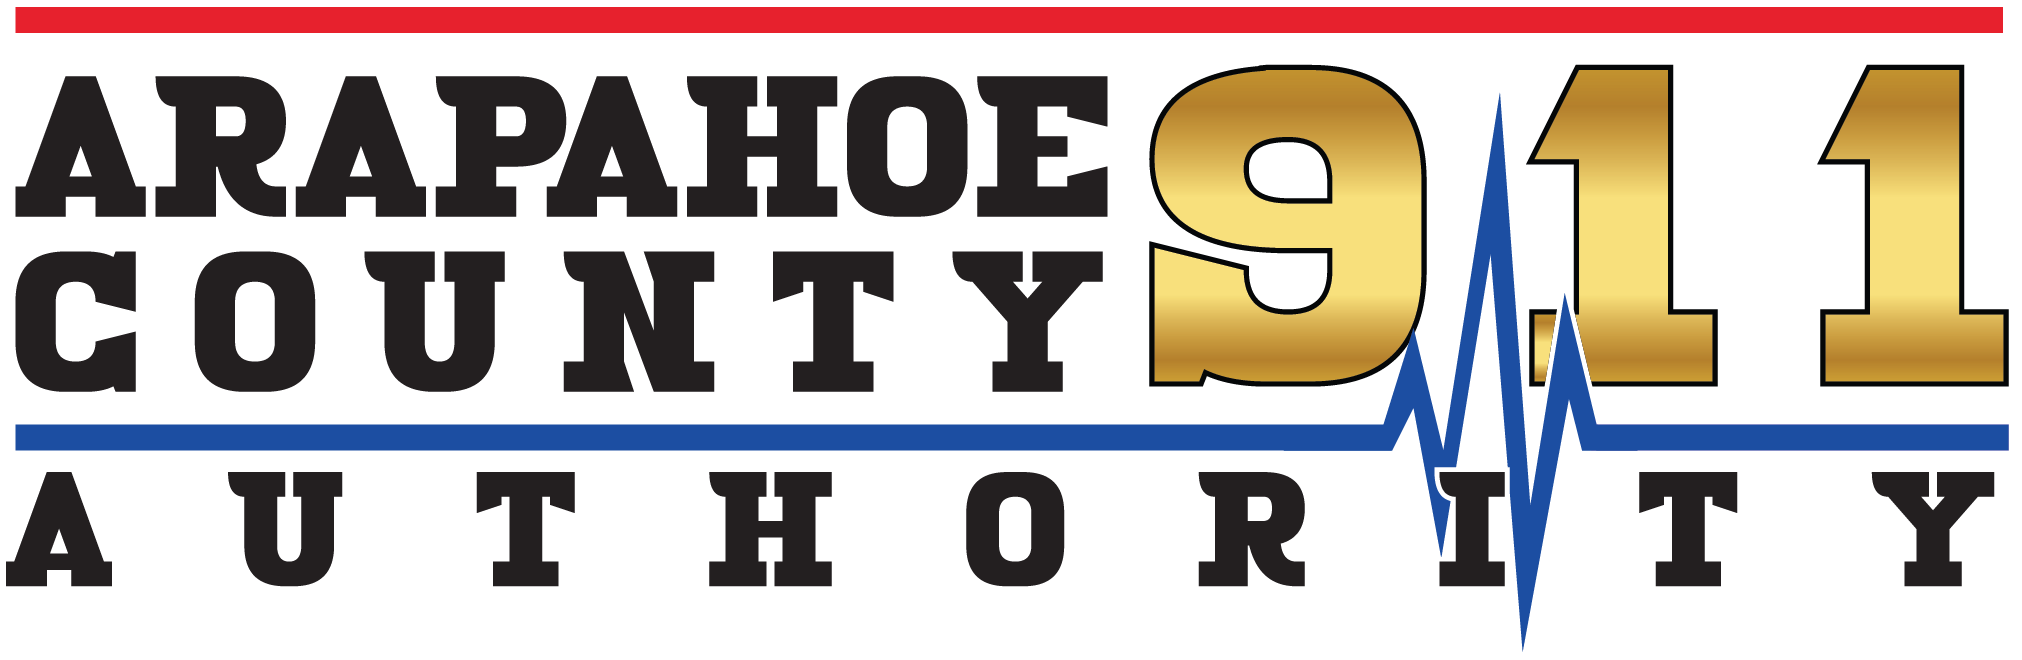 Arapahoe County 9-1-1 Authority